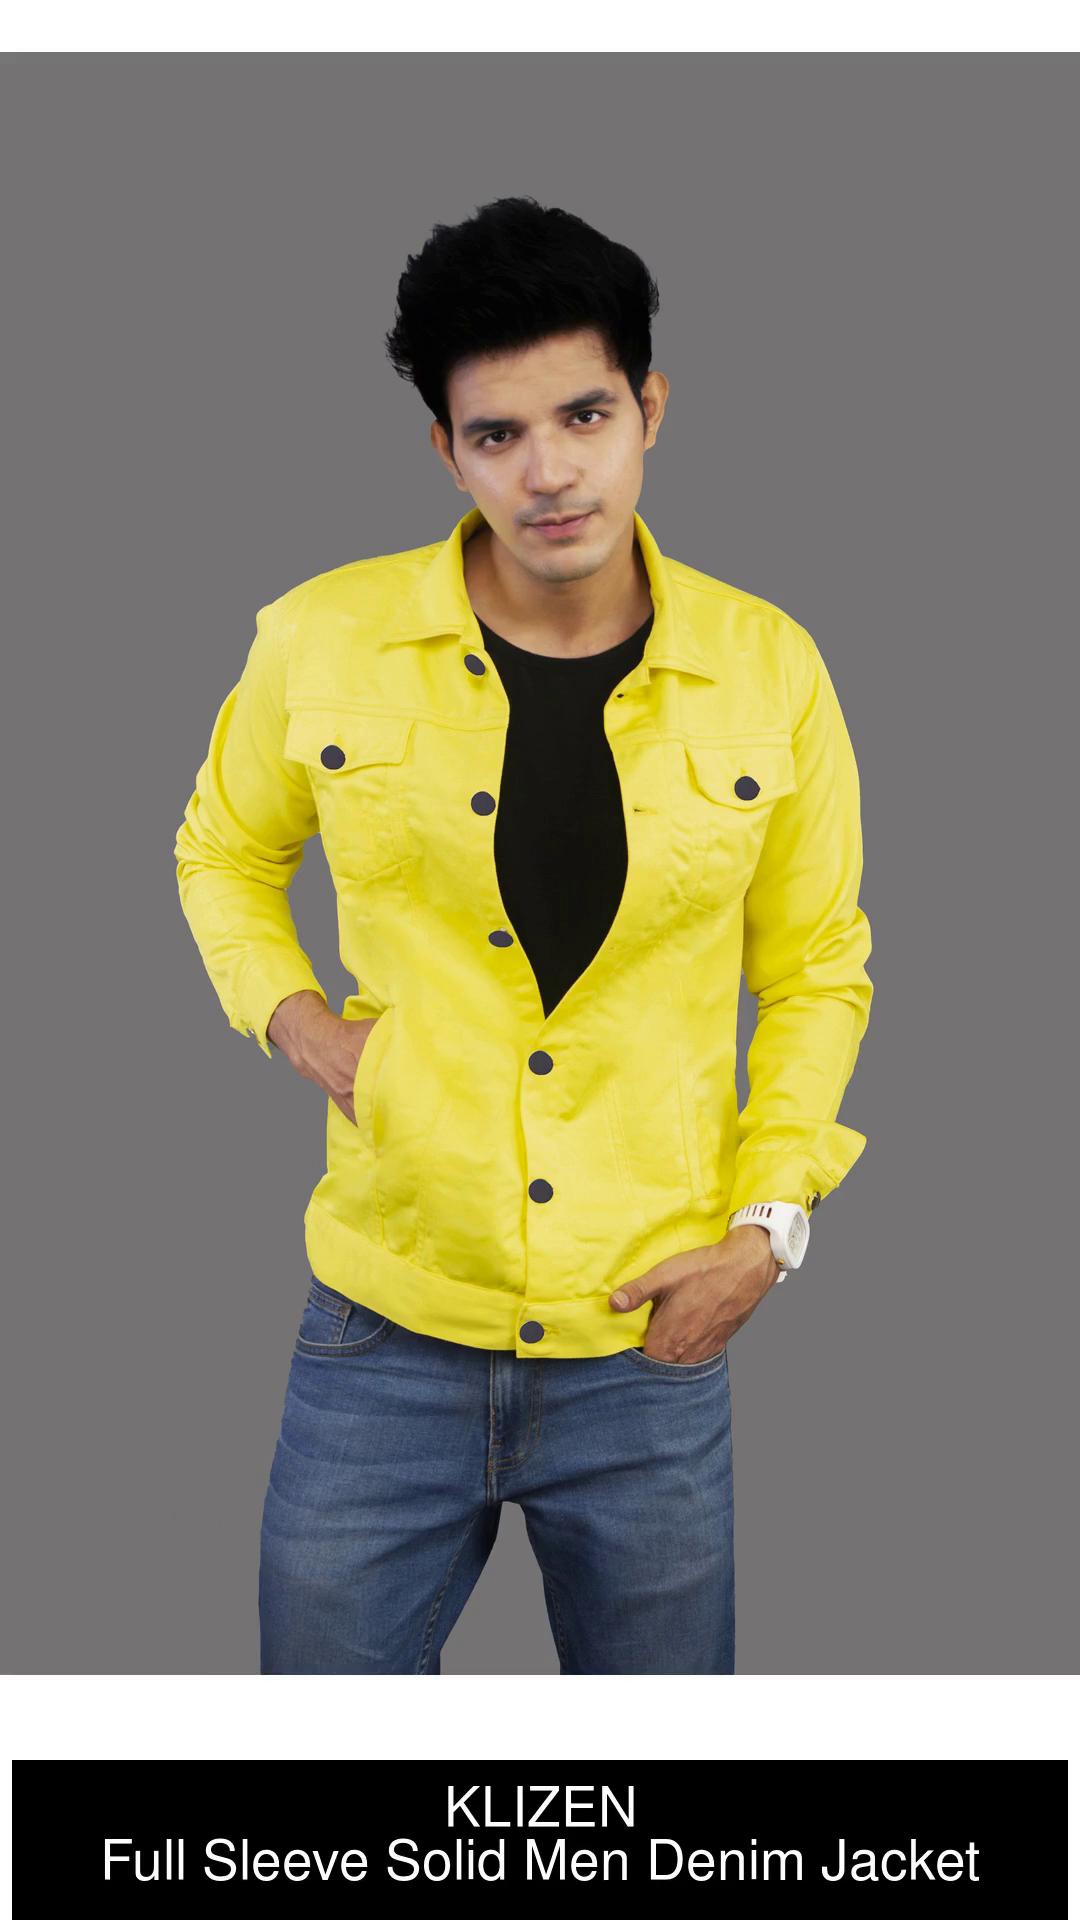 KLIZEN Full Sleeve Solid Men Denim Jacket - Buy KLIZEN Full Sleeve Solid  Men Denim Jacket Online at Best Prices in India